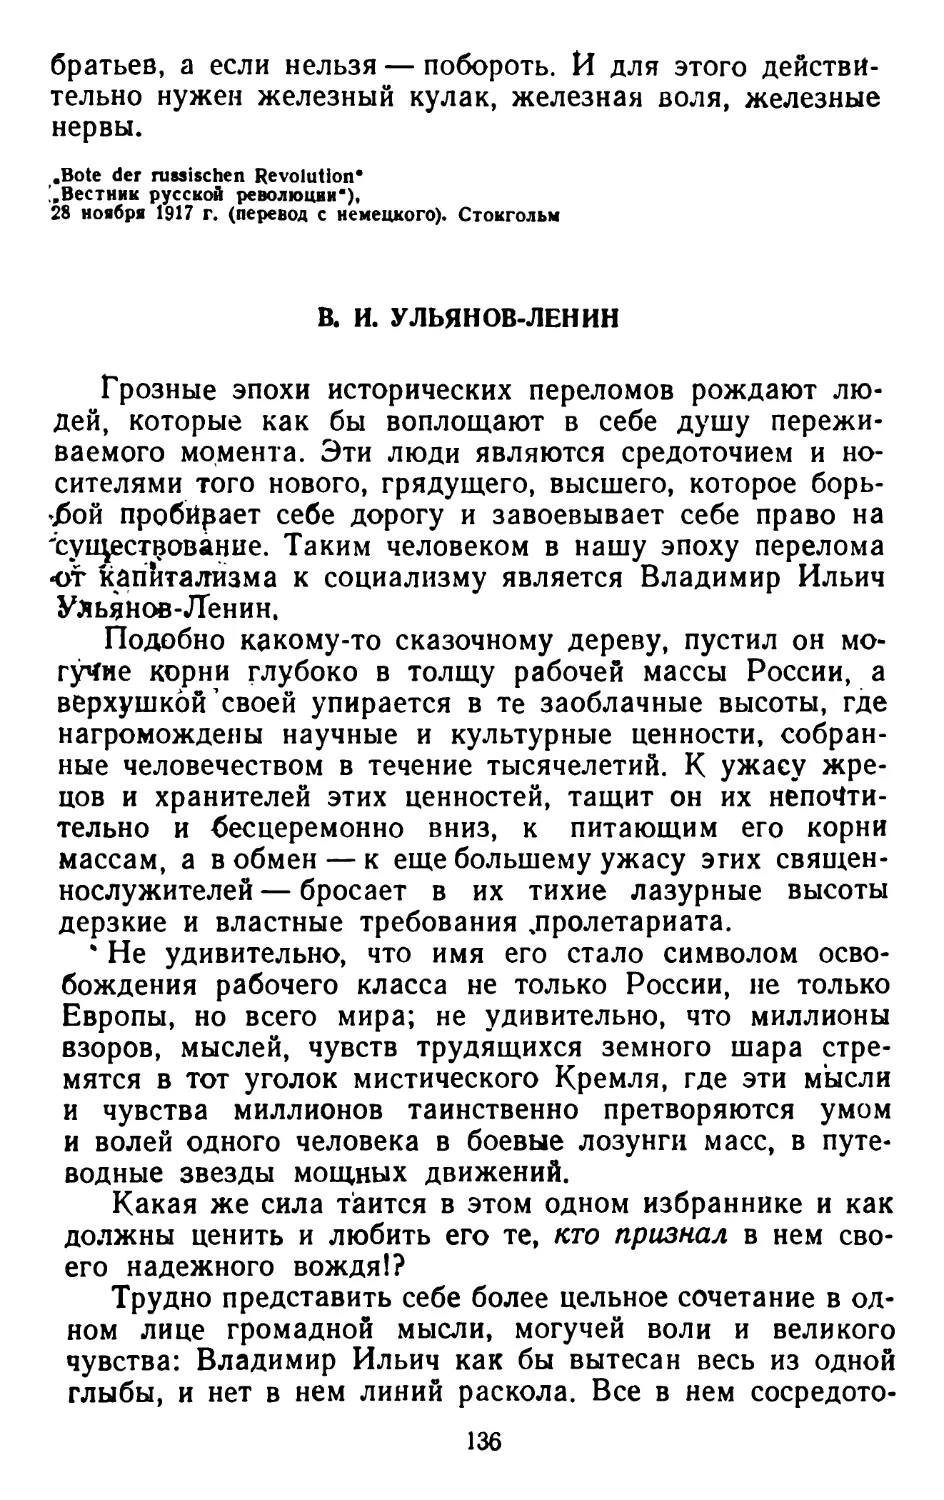 В. И. Ульянов-Ленин